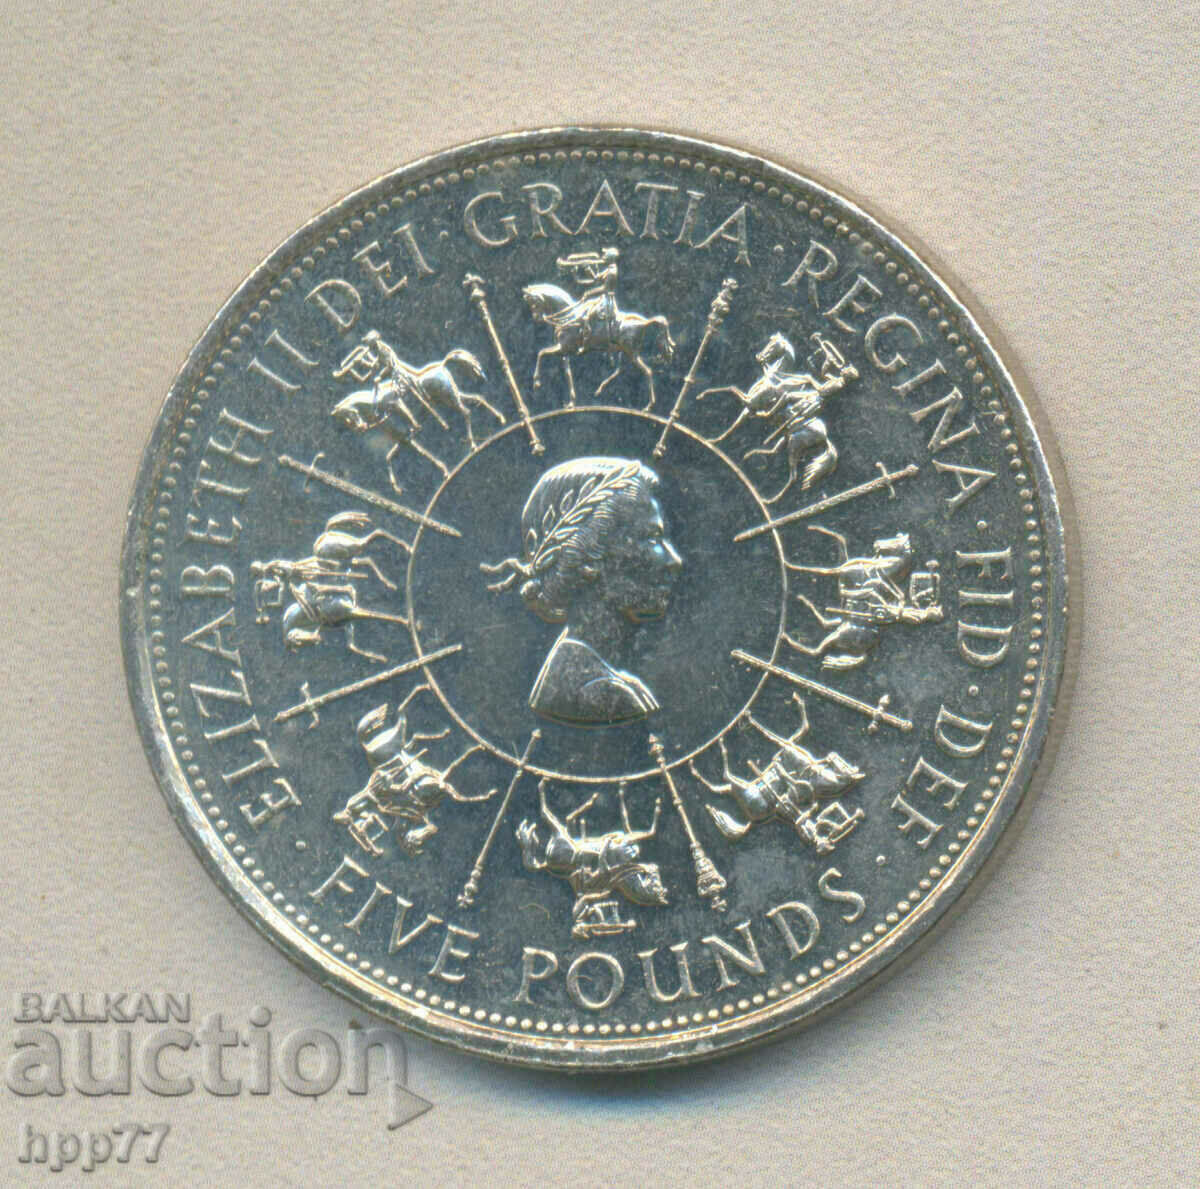 5 lire sterline 1993 40 de ani - încoronare